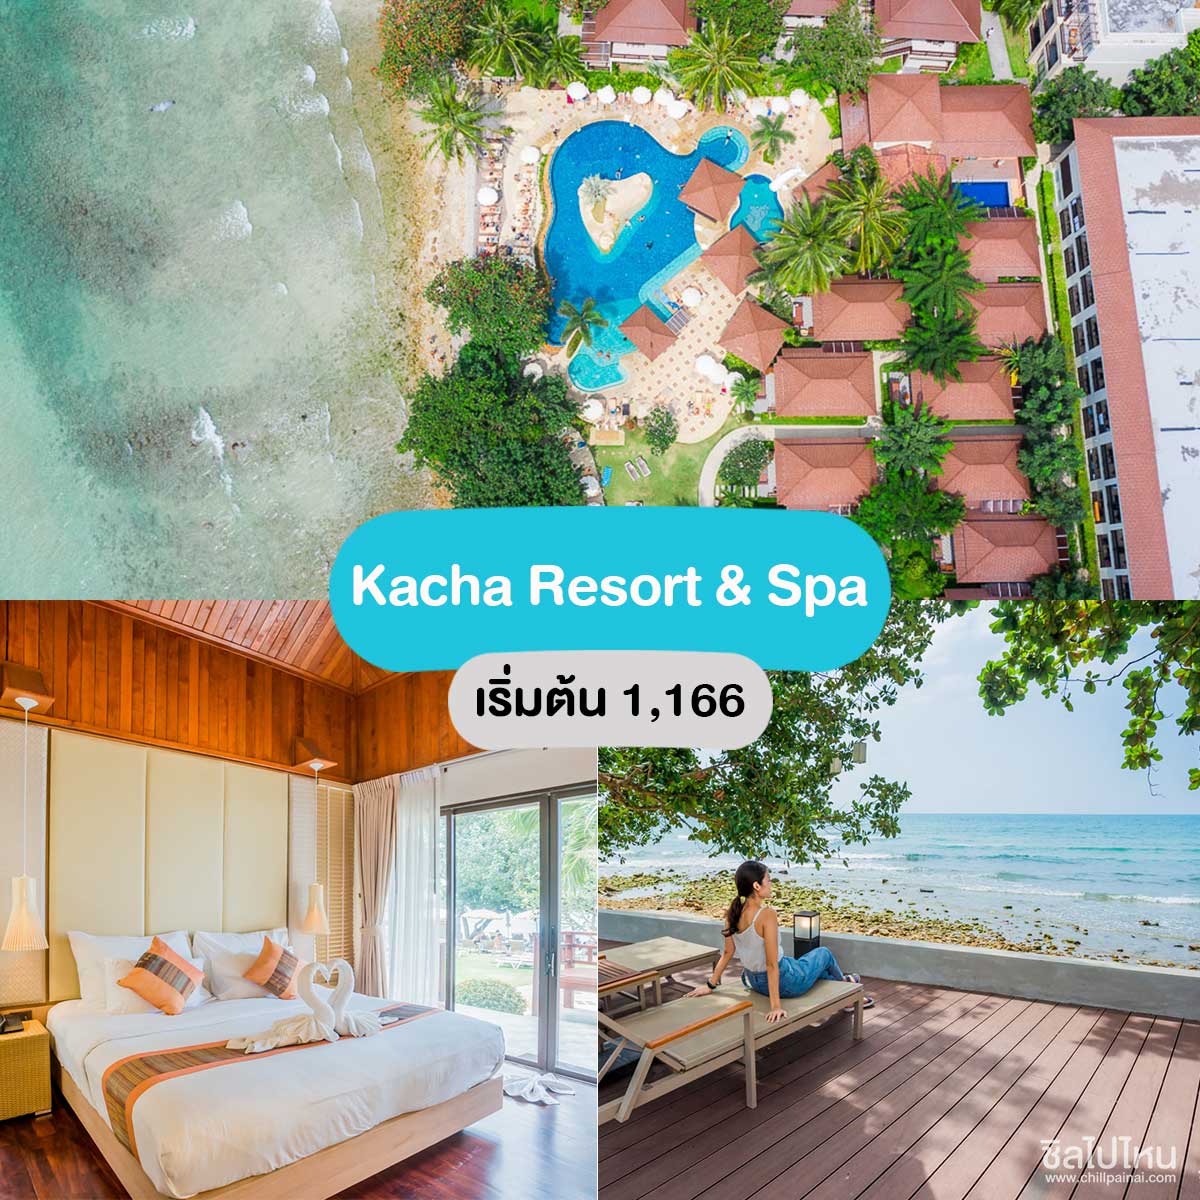  คชา รีสอร์ท เกาะช้าง (Kacha Resort & Spa)